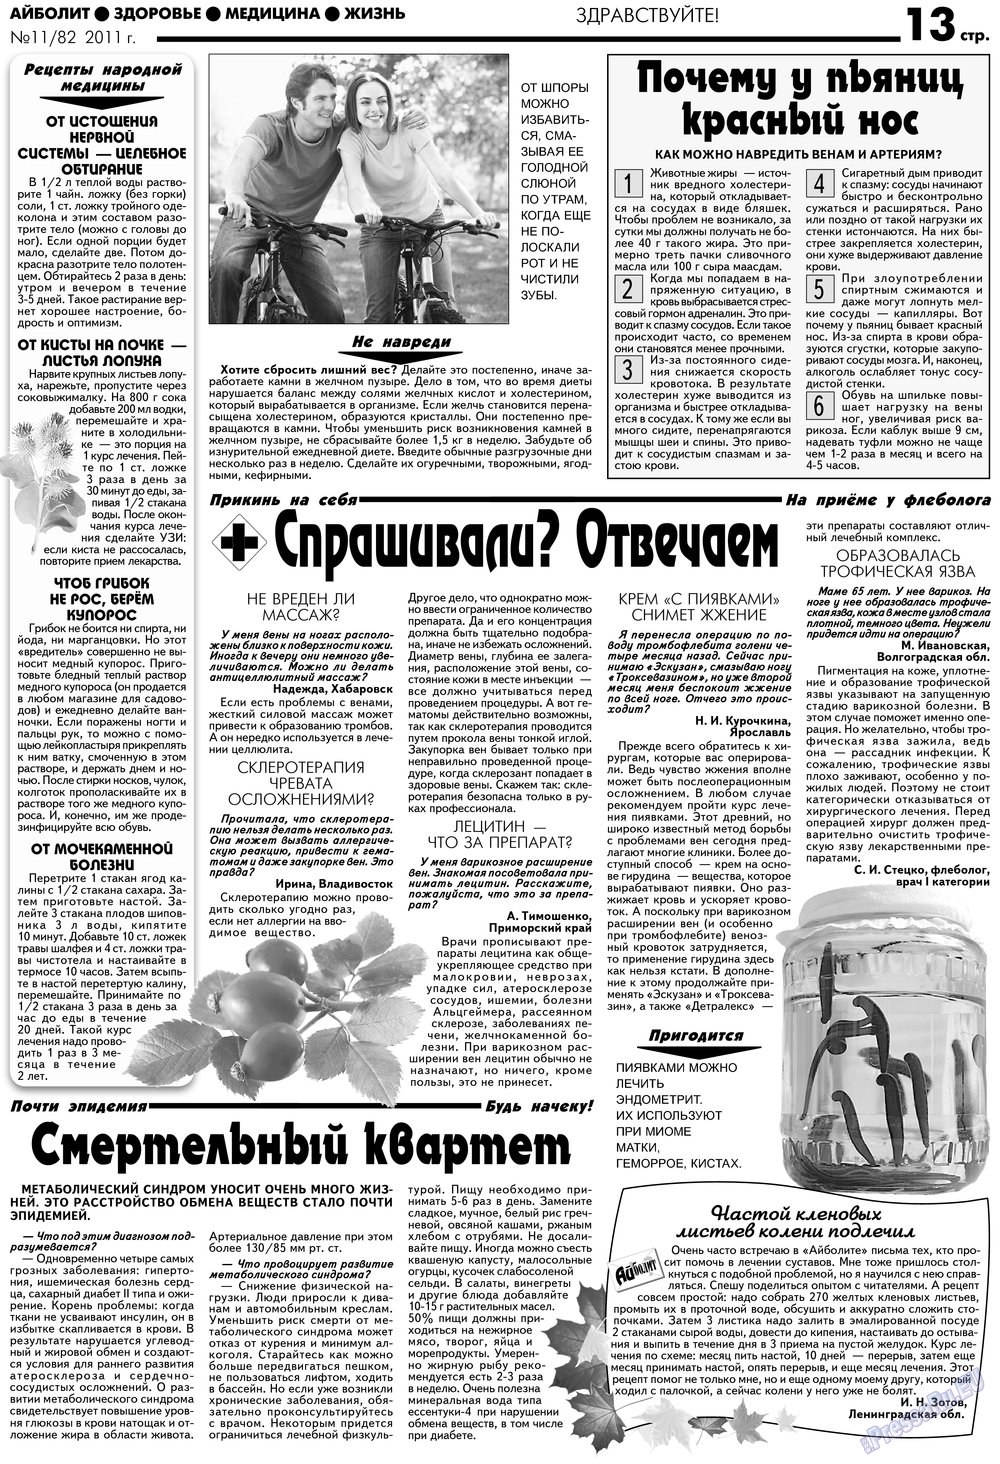 АйБолит, газета. 2012 №11 стр.13